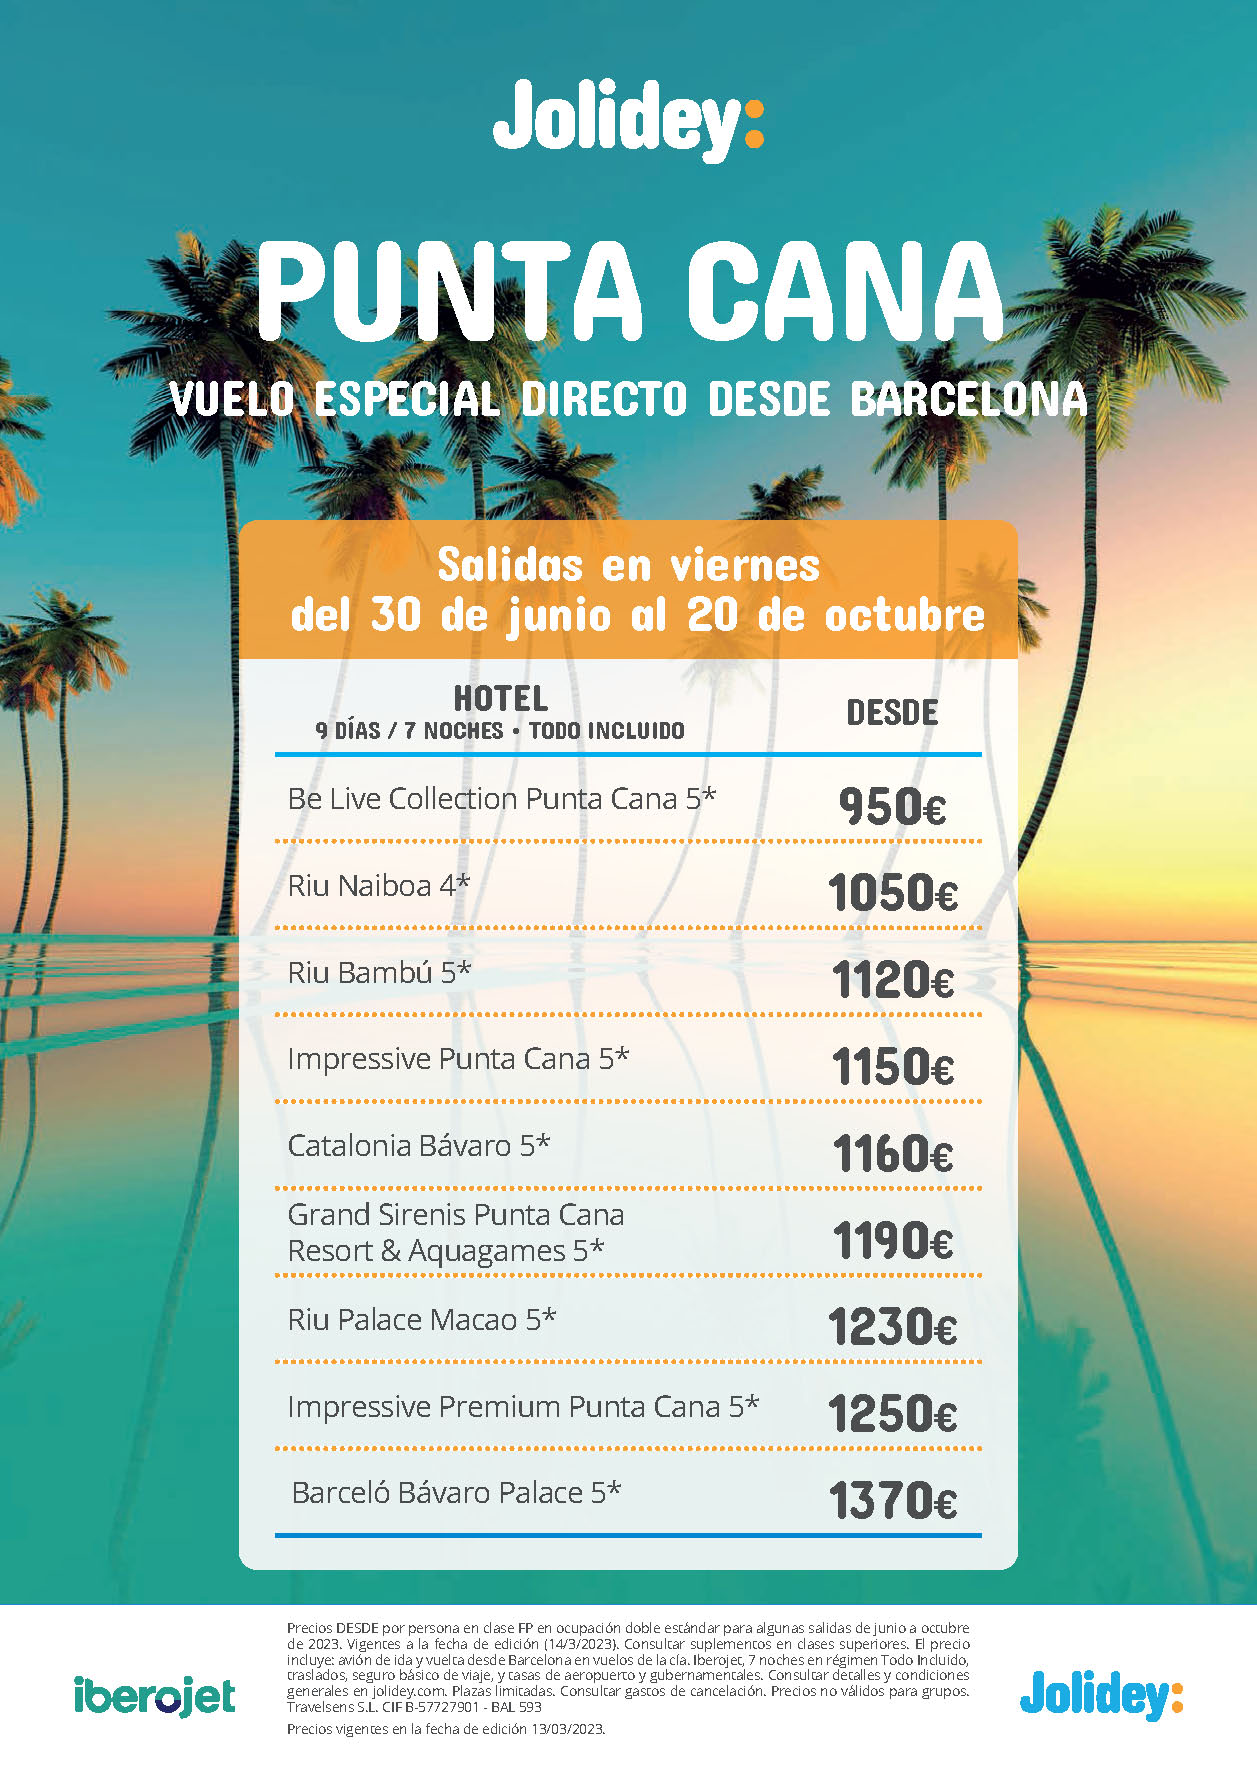 Oferta Jolidey Julio Agosto Septiembre Octubre 2023 Punta Cana 9 dias Todo Incluido salida en vuelo especial directo desde Barcelona